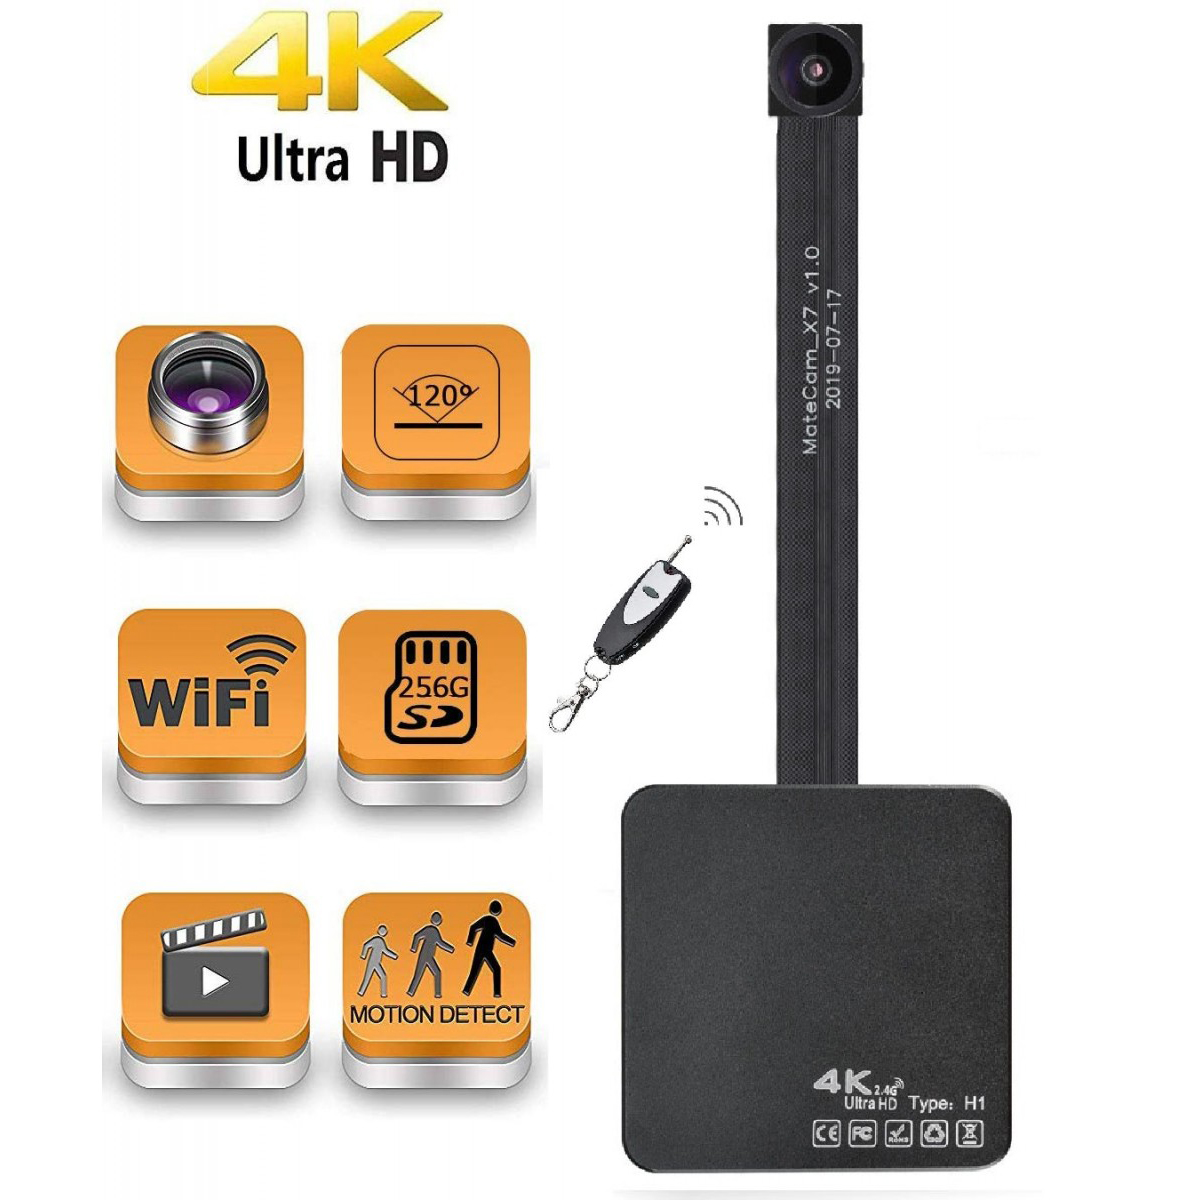 4K 120 ° objektiv Real Ultra HD WiFi Skrytá špionážní kamera Mini kamera Přenosná bezdrátová videokamera Videorekordér s chůvovou kamerou pro detekci pohybu pro domácí zabezpečení až 400 GB